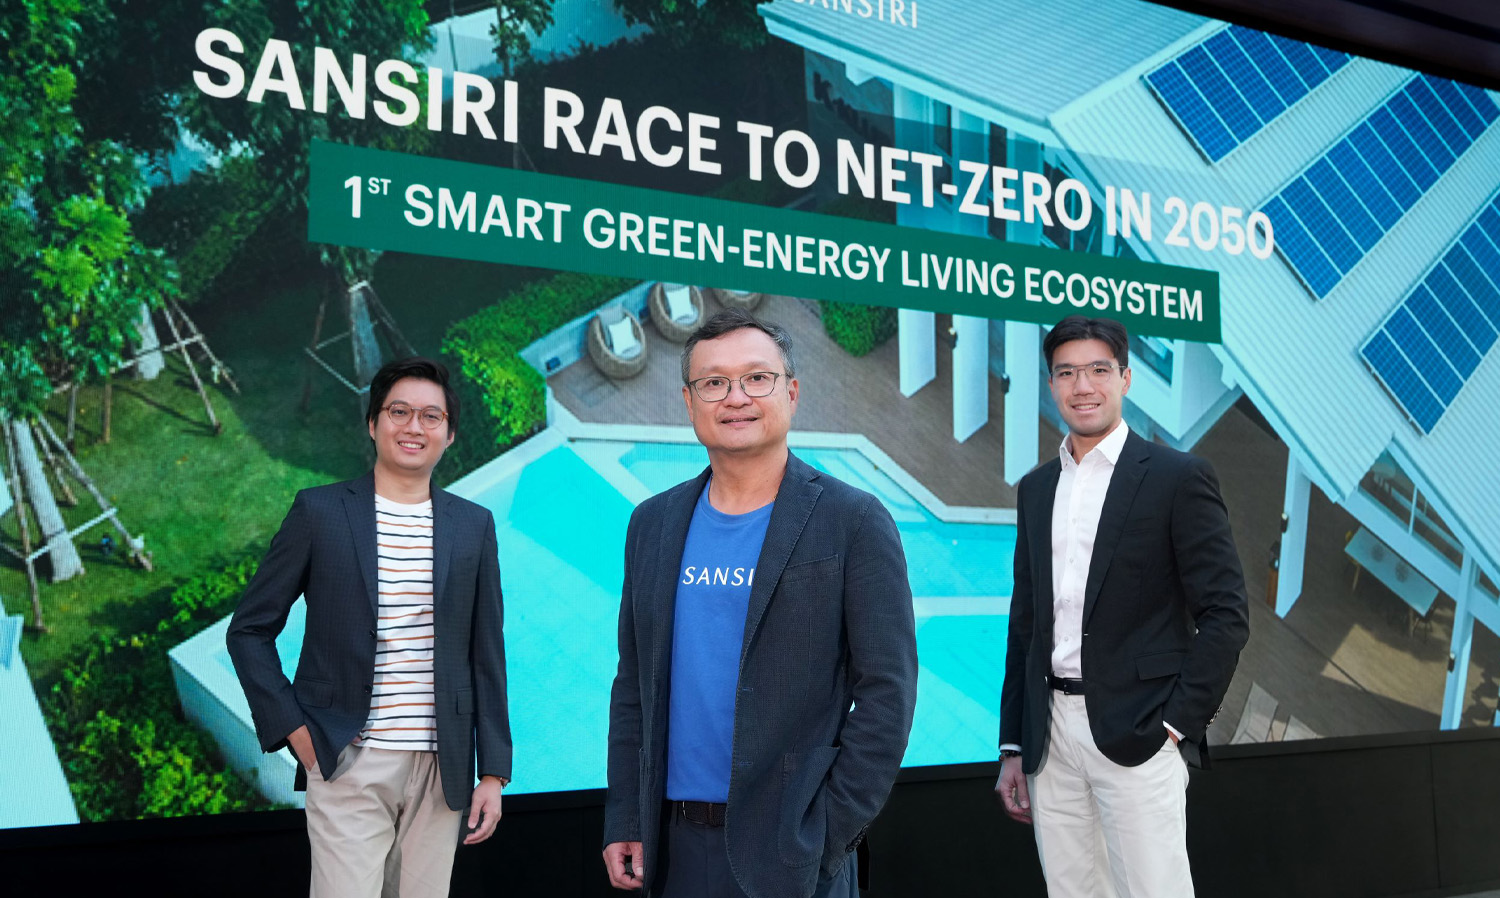 แสนสิริ รุดหน้าโร้ดแมป พันธกิจ Net-Zero ปี 2022 สู่บ้านลดคาร์บอนแห่งอนาคต  สร้าง Smart Green-Energy Living Ecosystem ครั้งแรก! ของอสังหาฯไทย